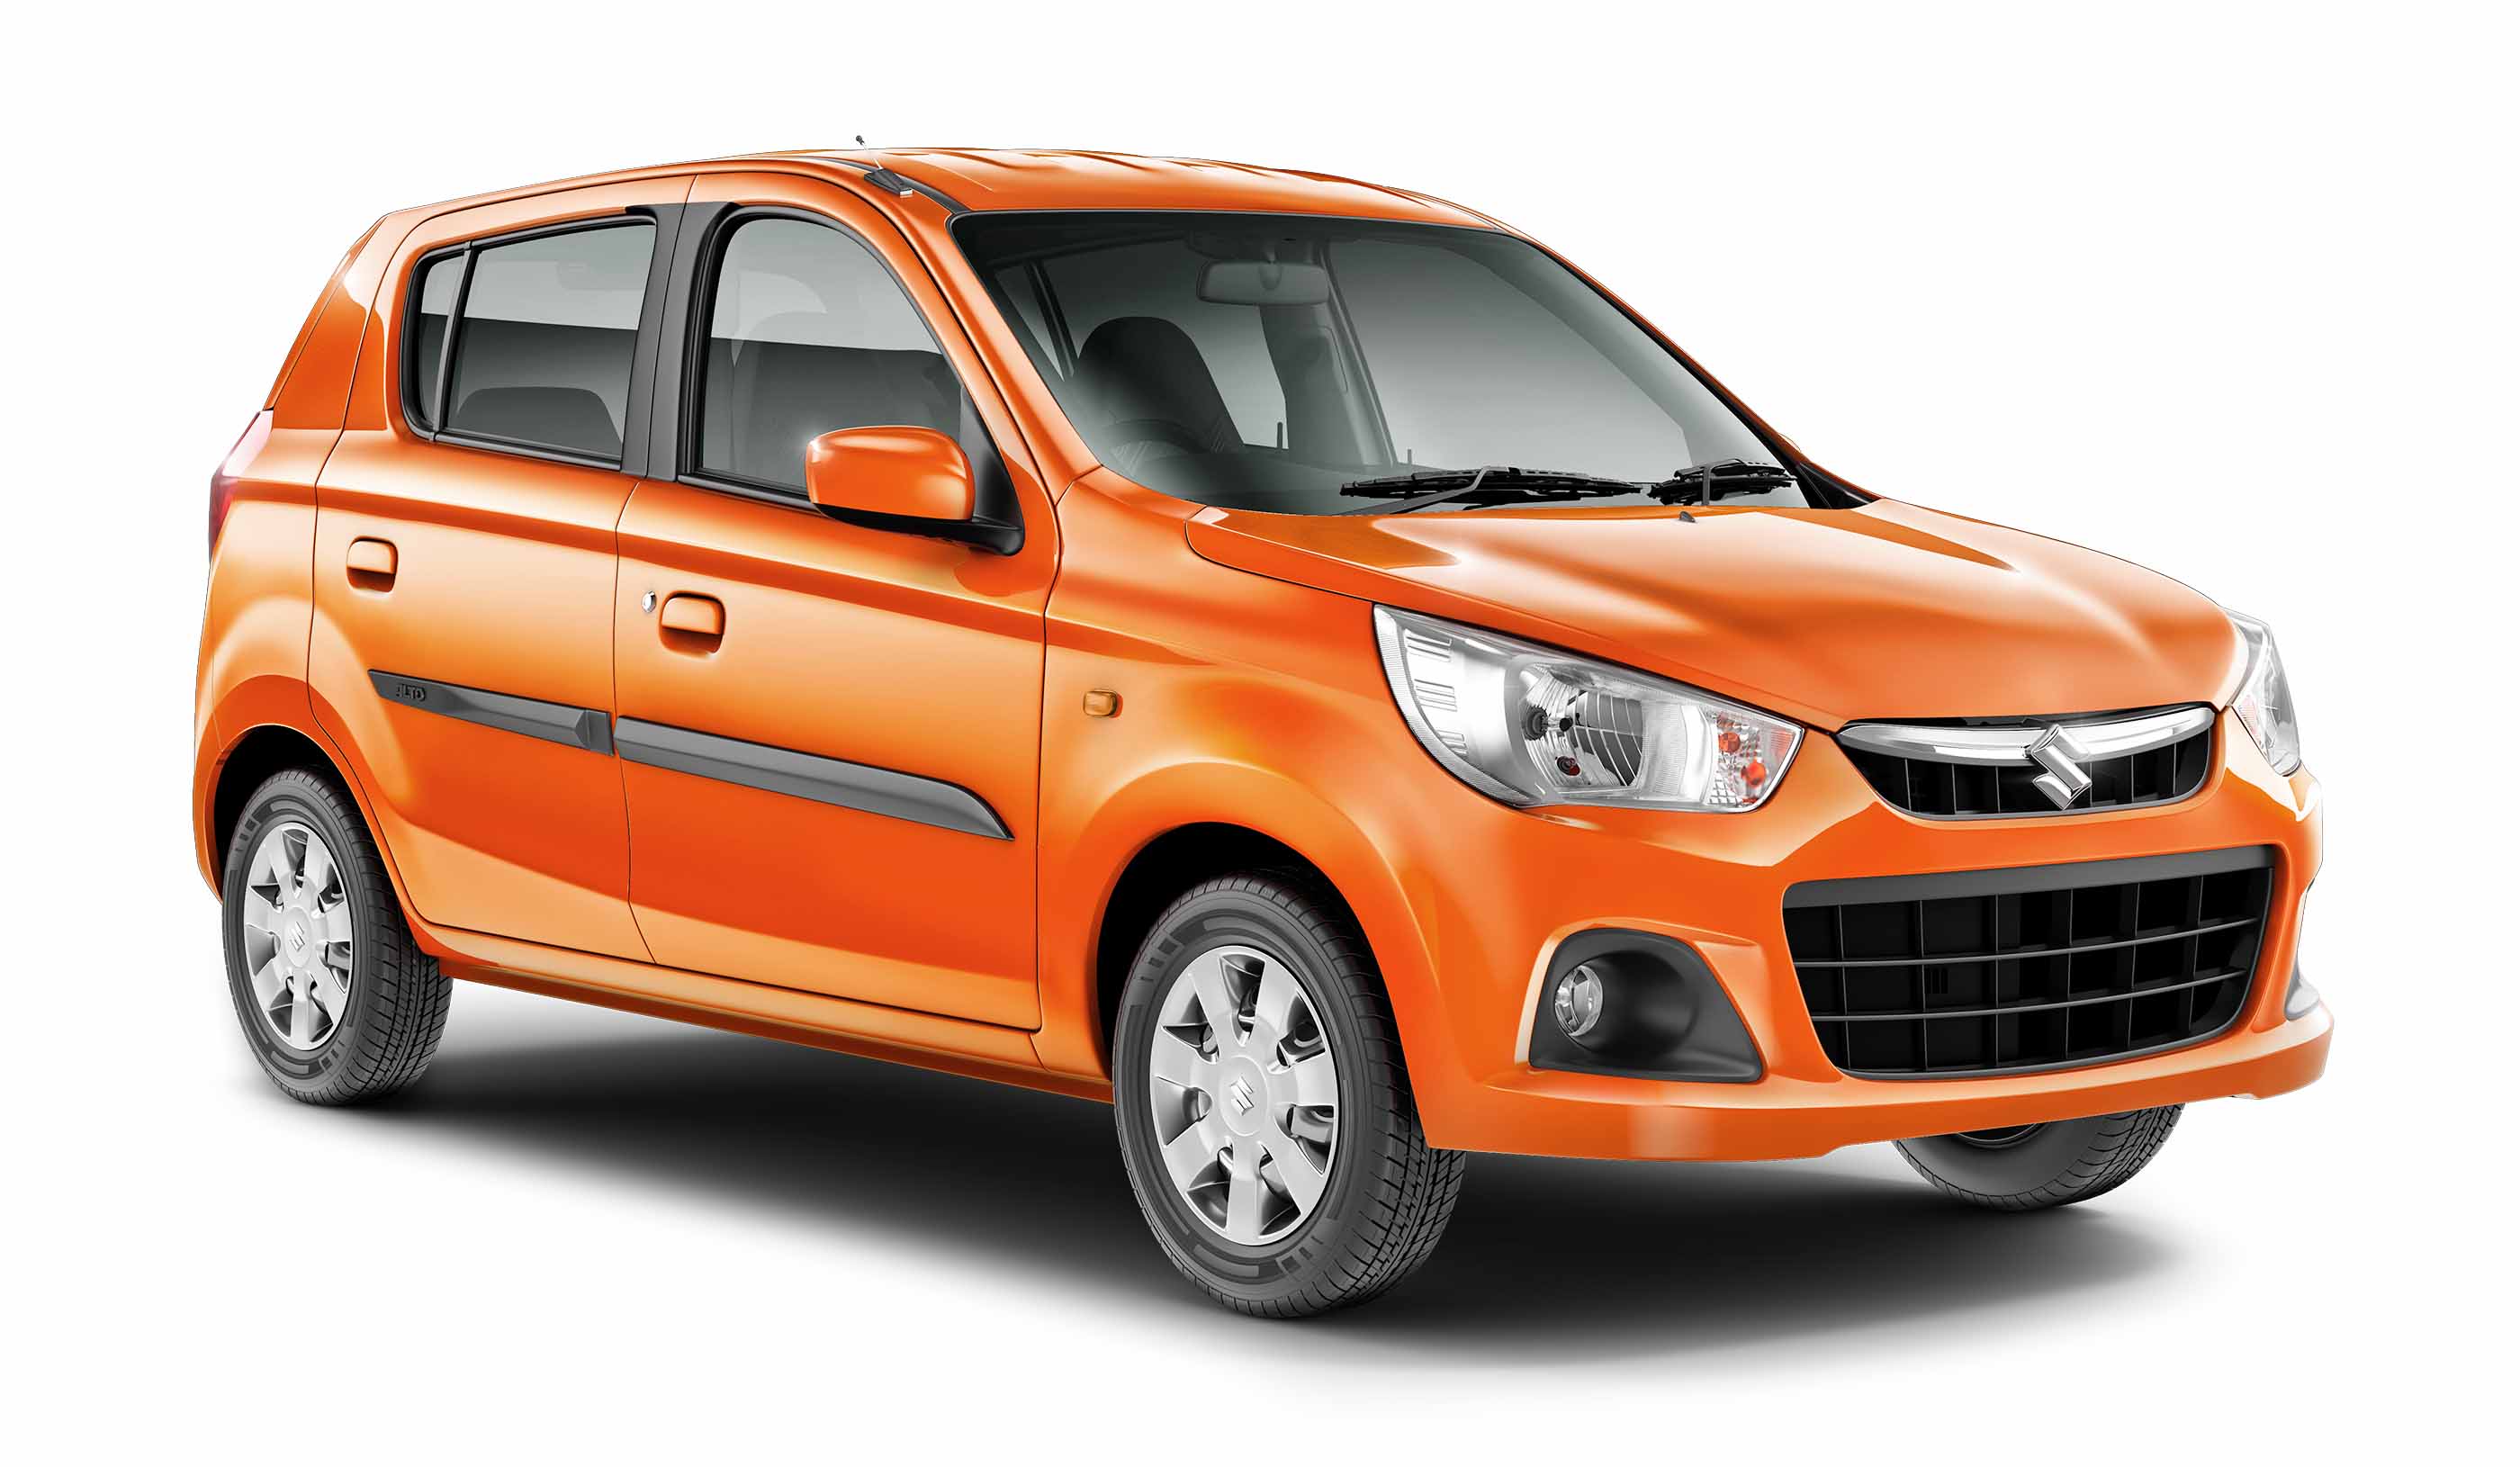 Maruti Suzuki Alto K10 In Orange Color 4k Uhd Car Wallpaper - Alto K10 New Model 2019 , HD Wallpaper & Backgrounds